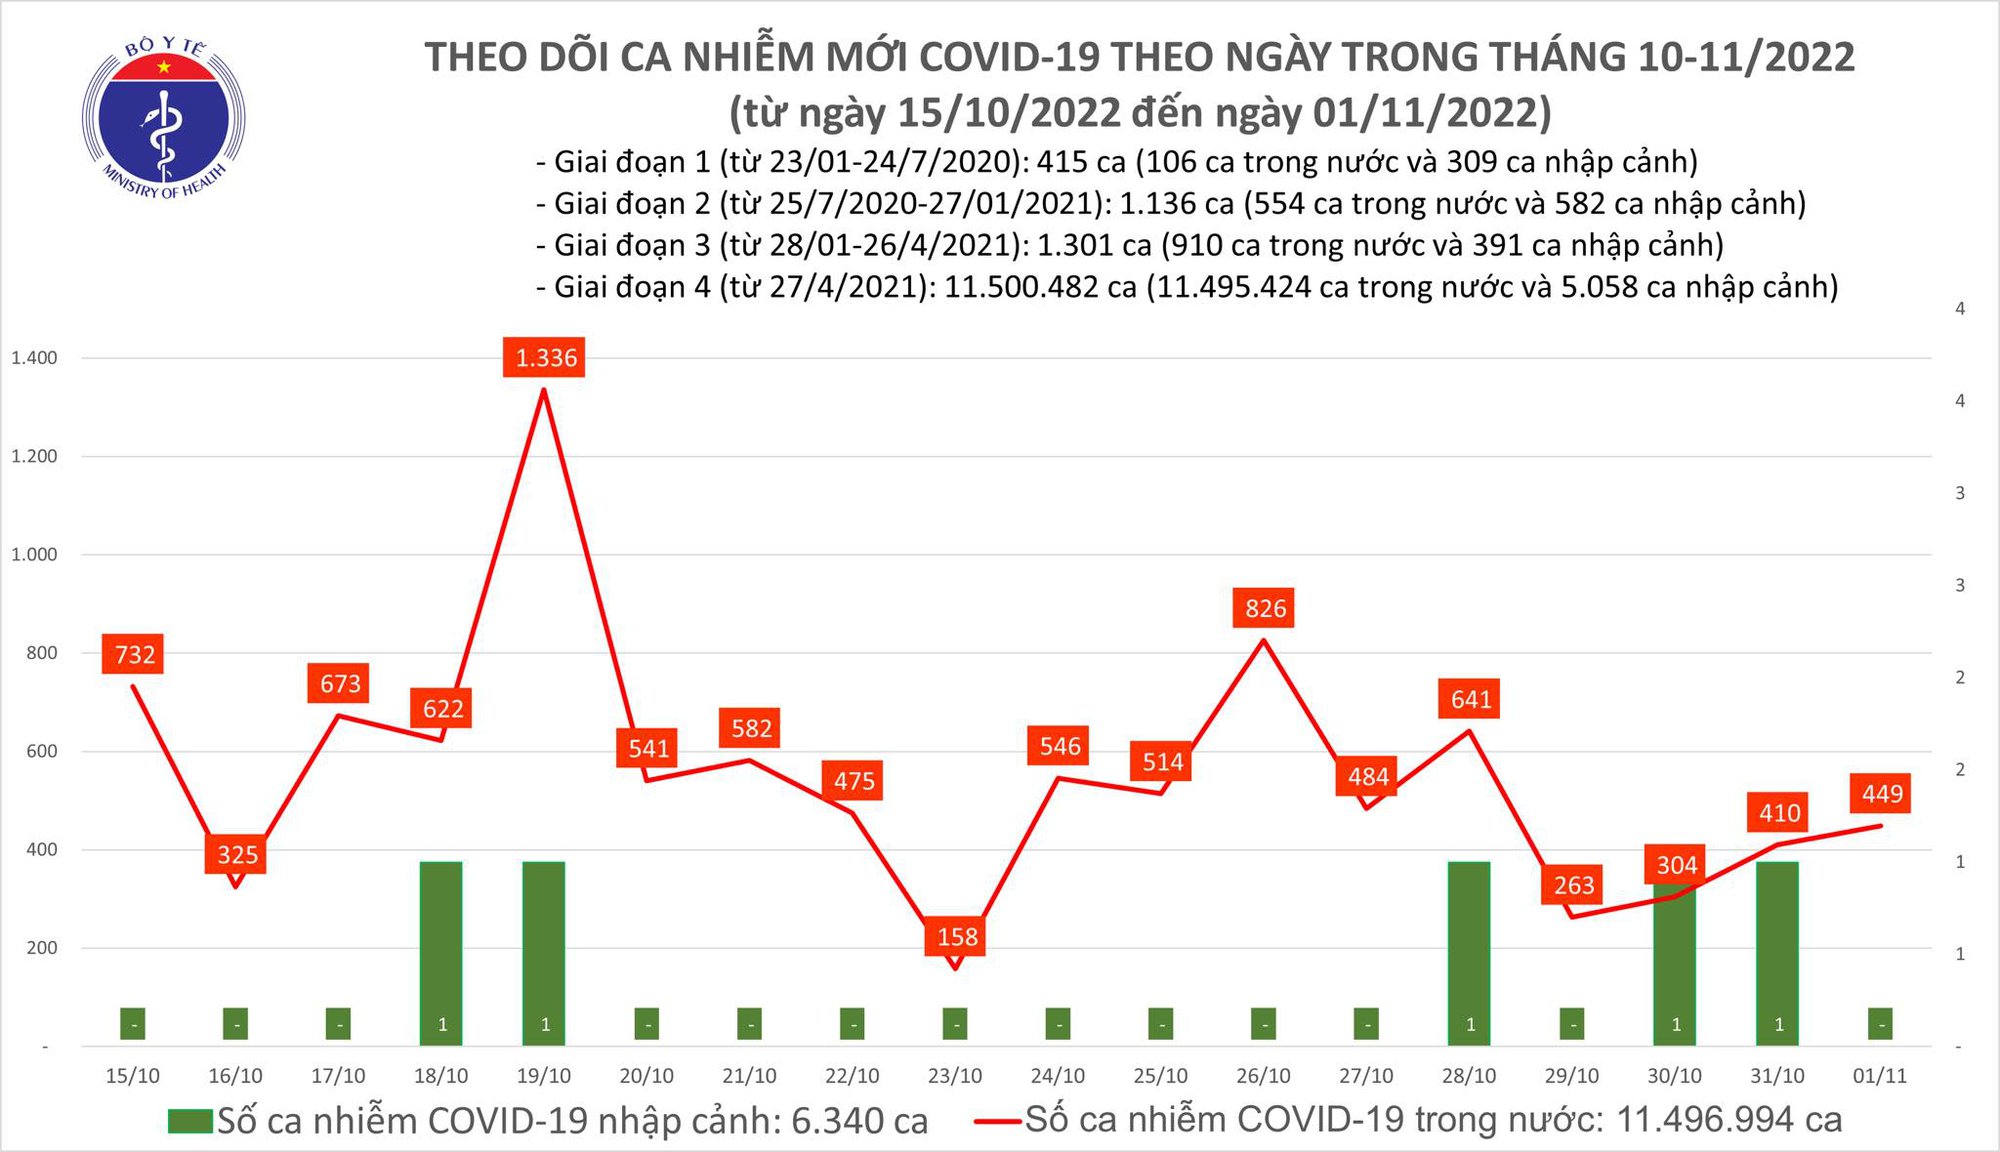 Ngày 1/11: Có 449 ca COVID-19 mới, 1 bệnh nhân ở Quảng Ninh tử vong - Ảnh 1.